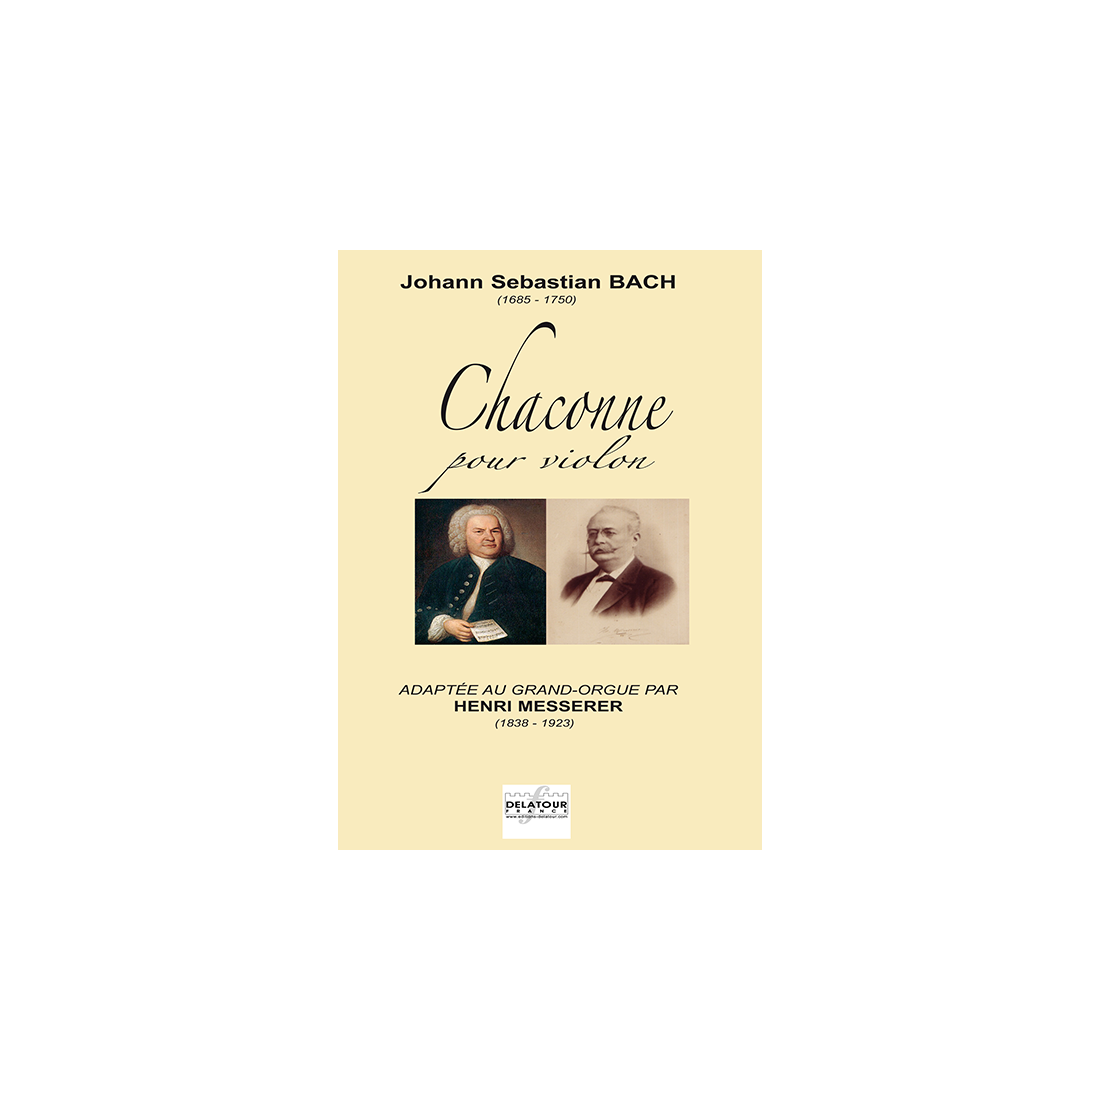 Chaconne pour violon adaptée au Grand-Orgue